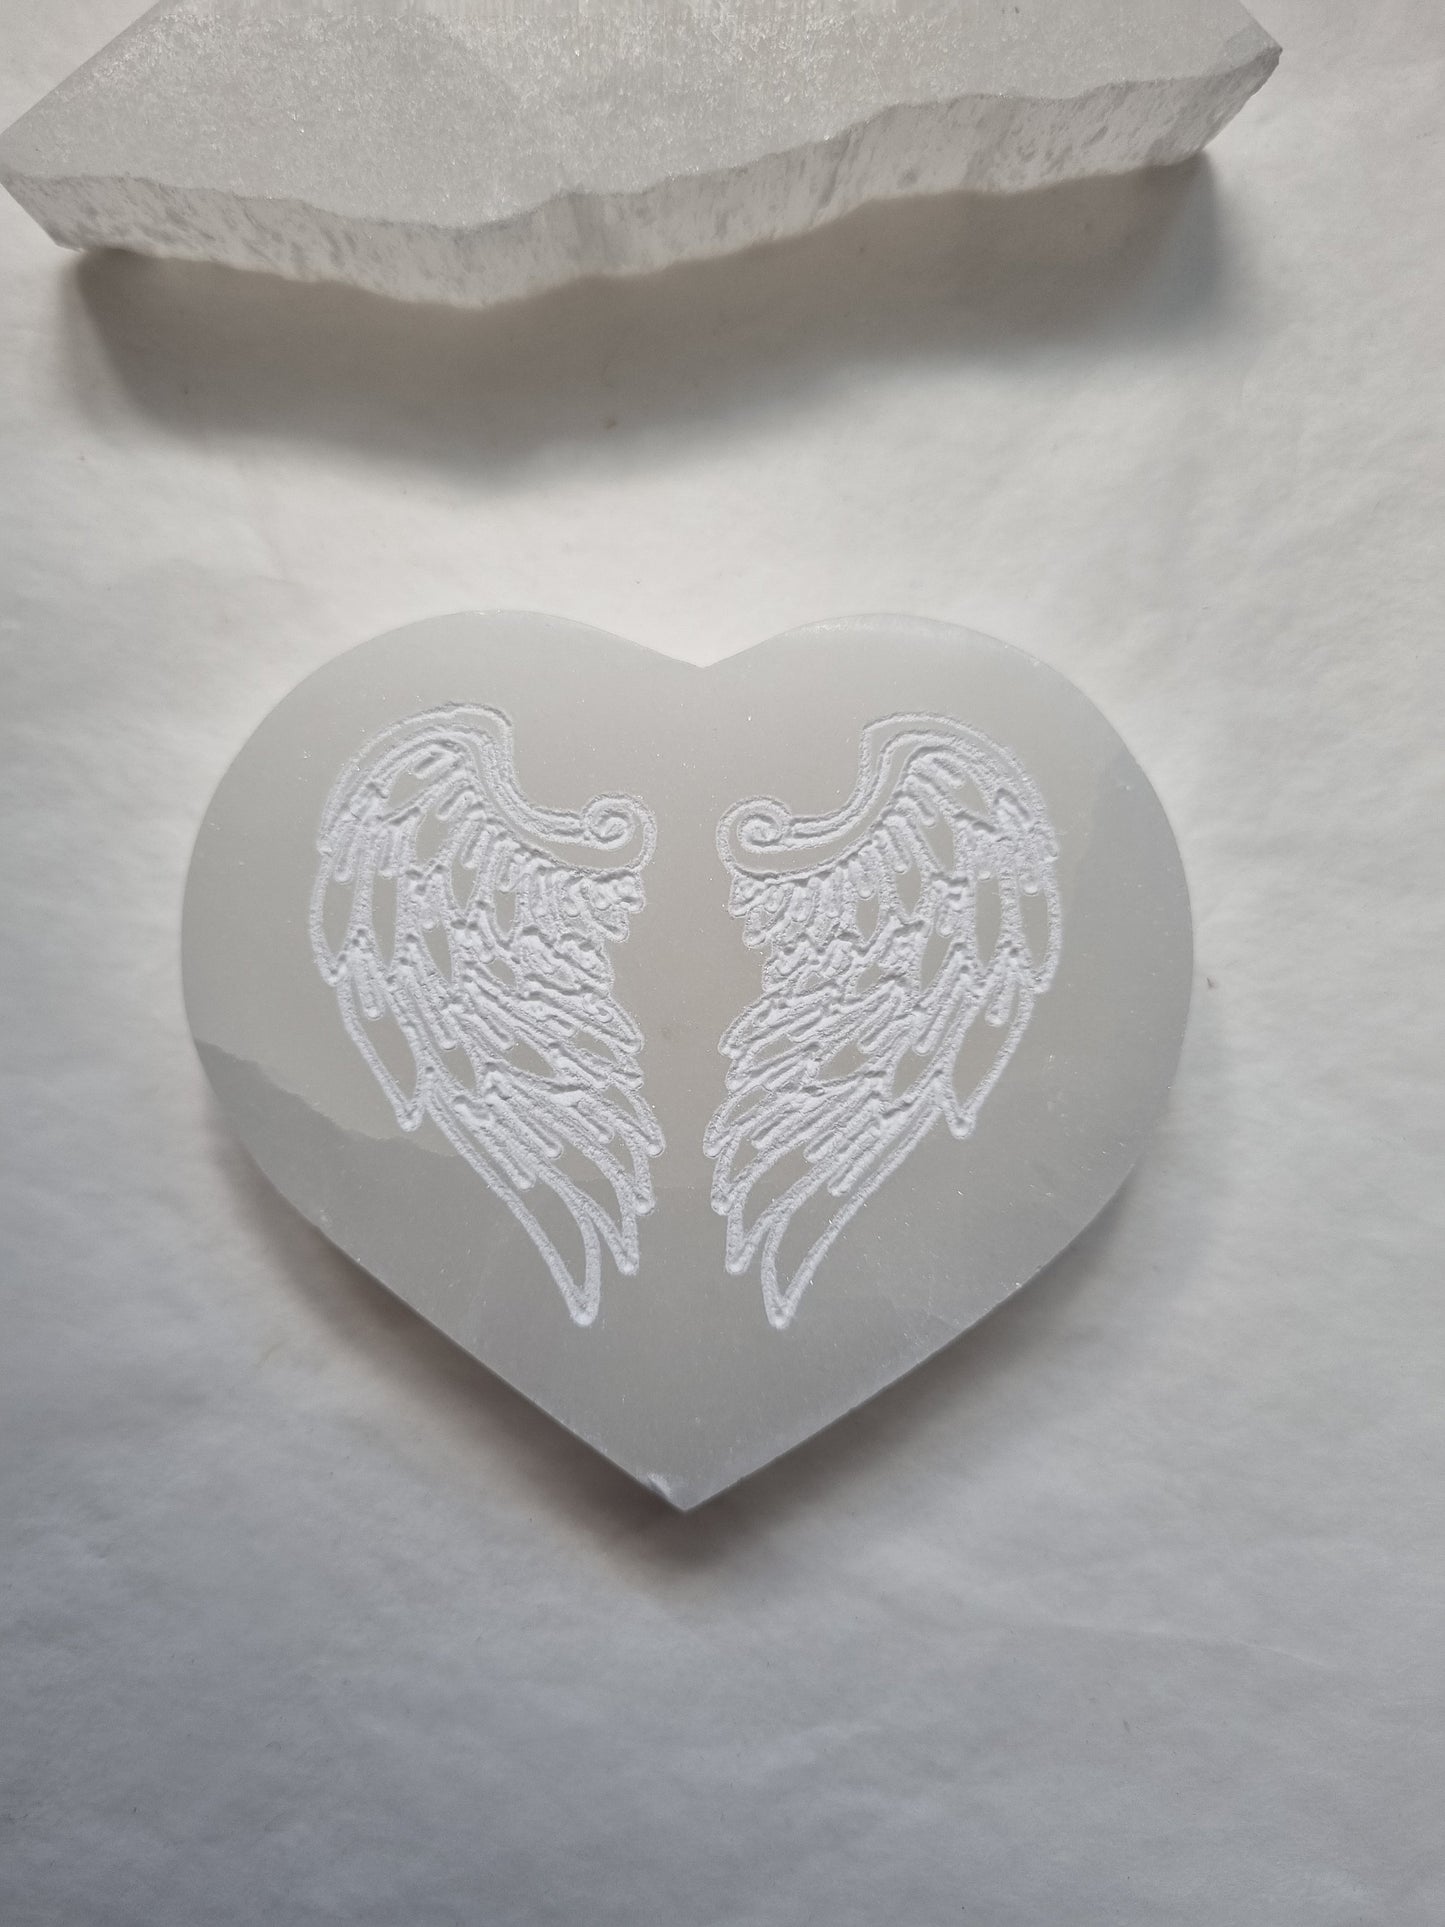 Angel wings Selenite heart plate